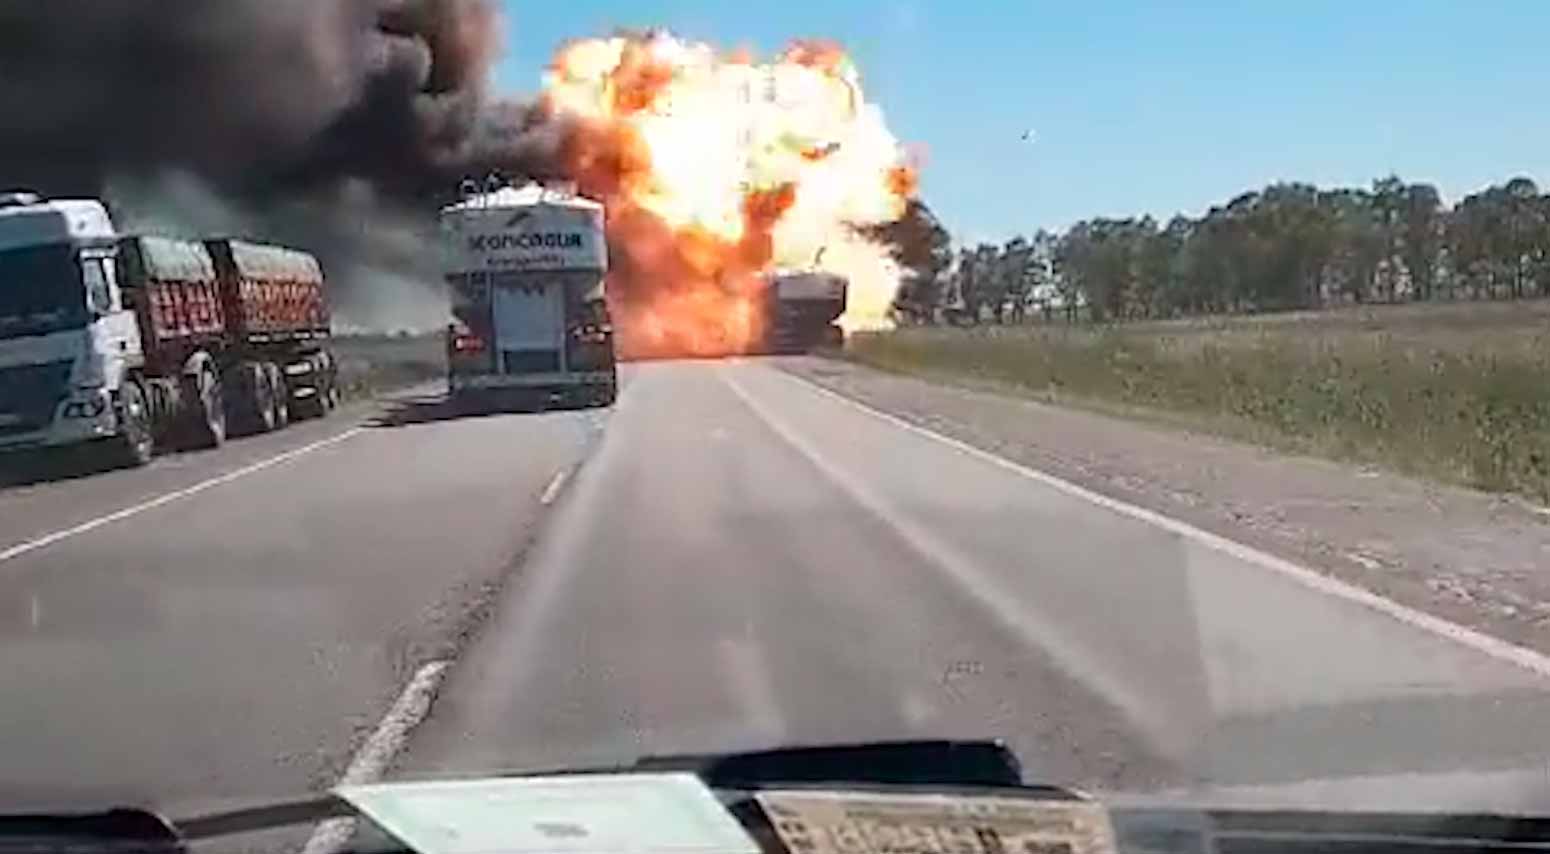 Vidéo montrant le moment où un camion explose sur une autoroute en Argentine. Photo et vidéo : Reproduction Twitter @enlamiraradio 